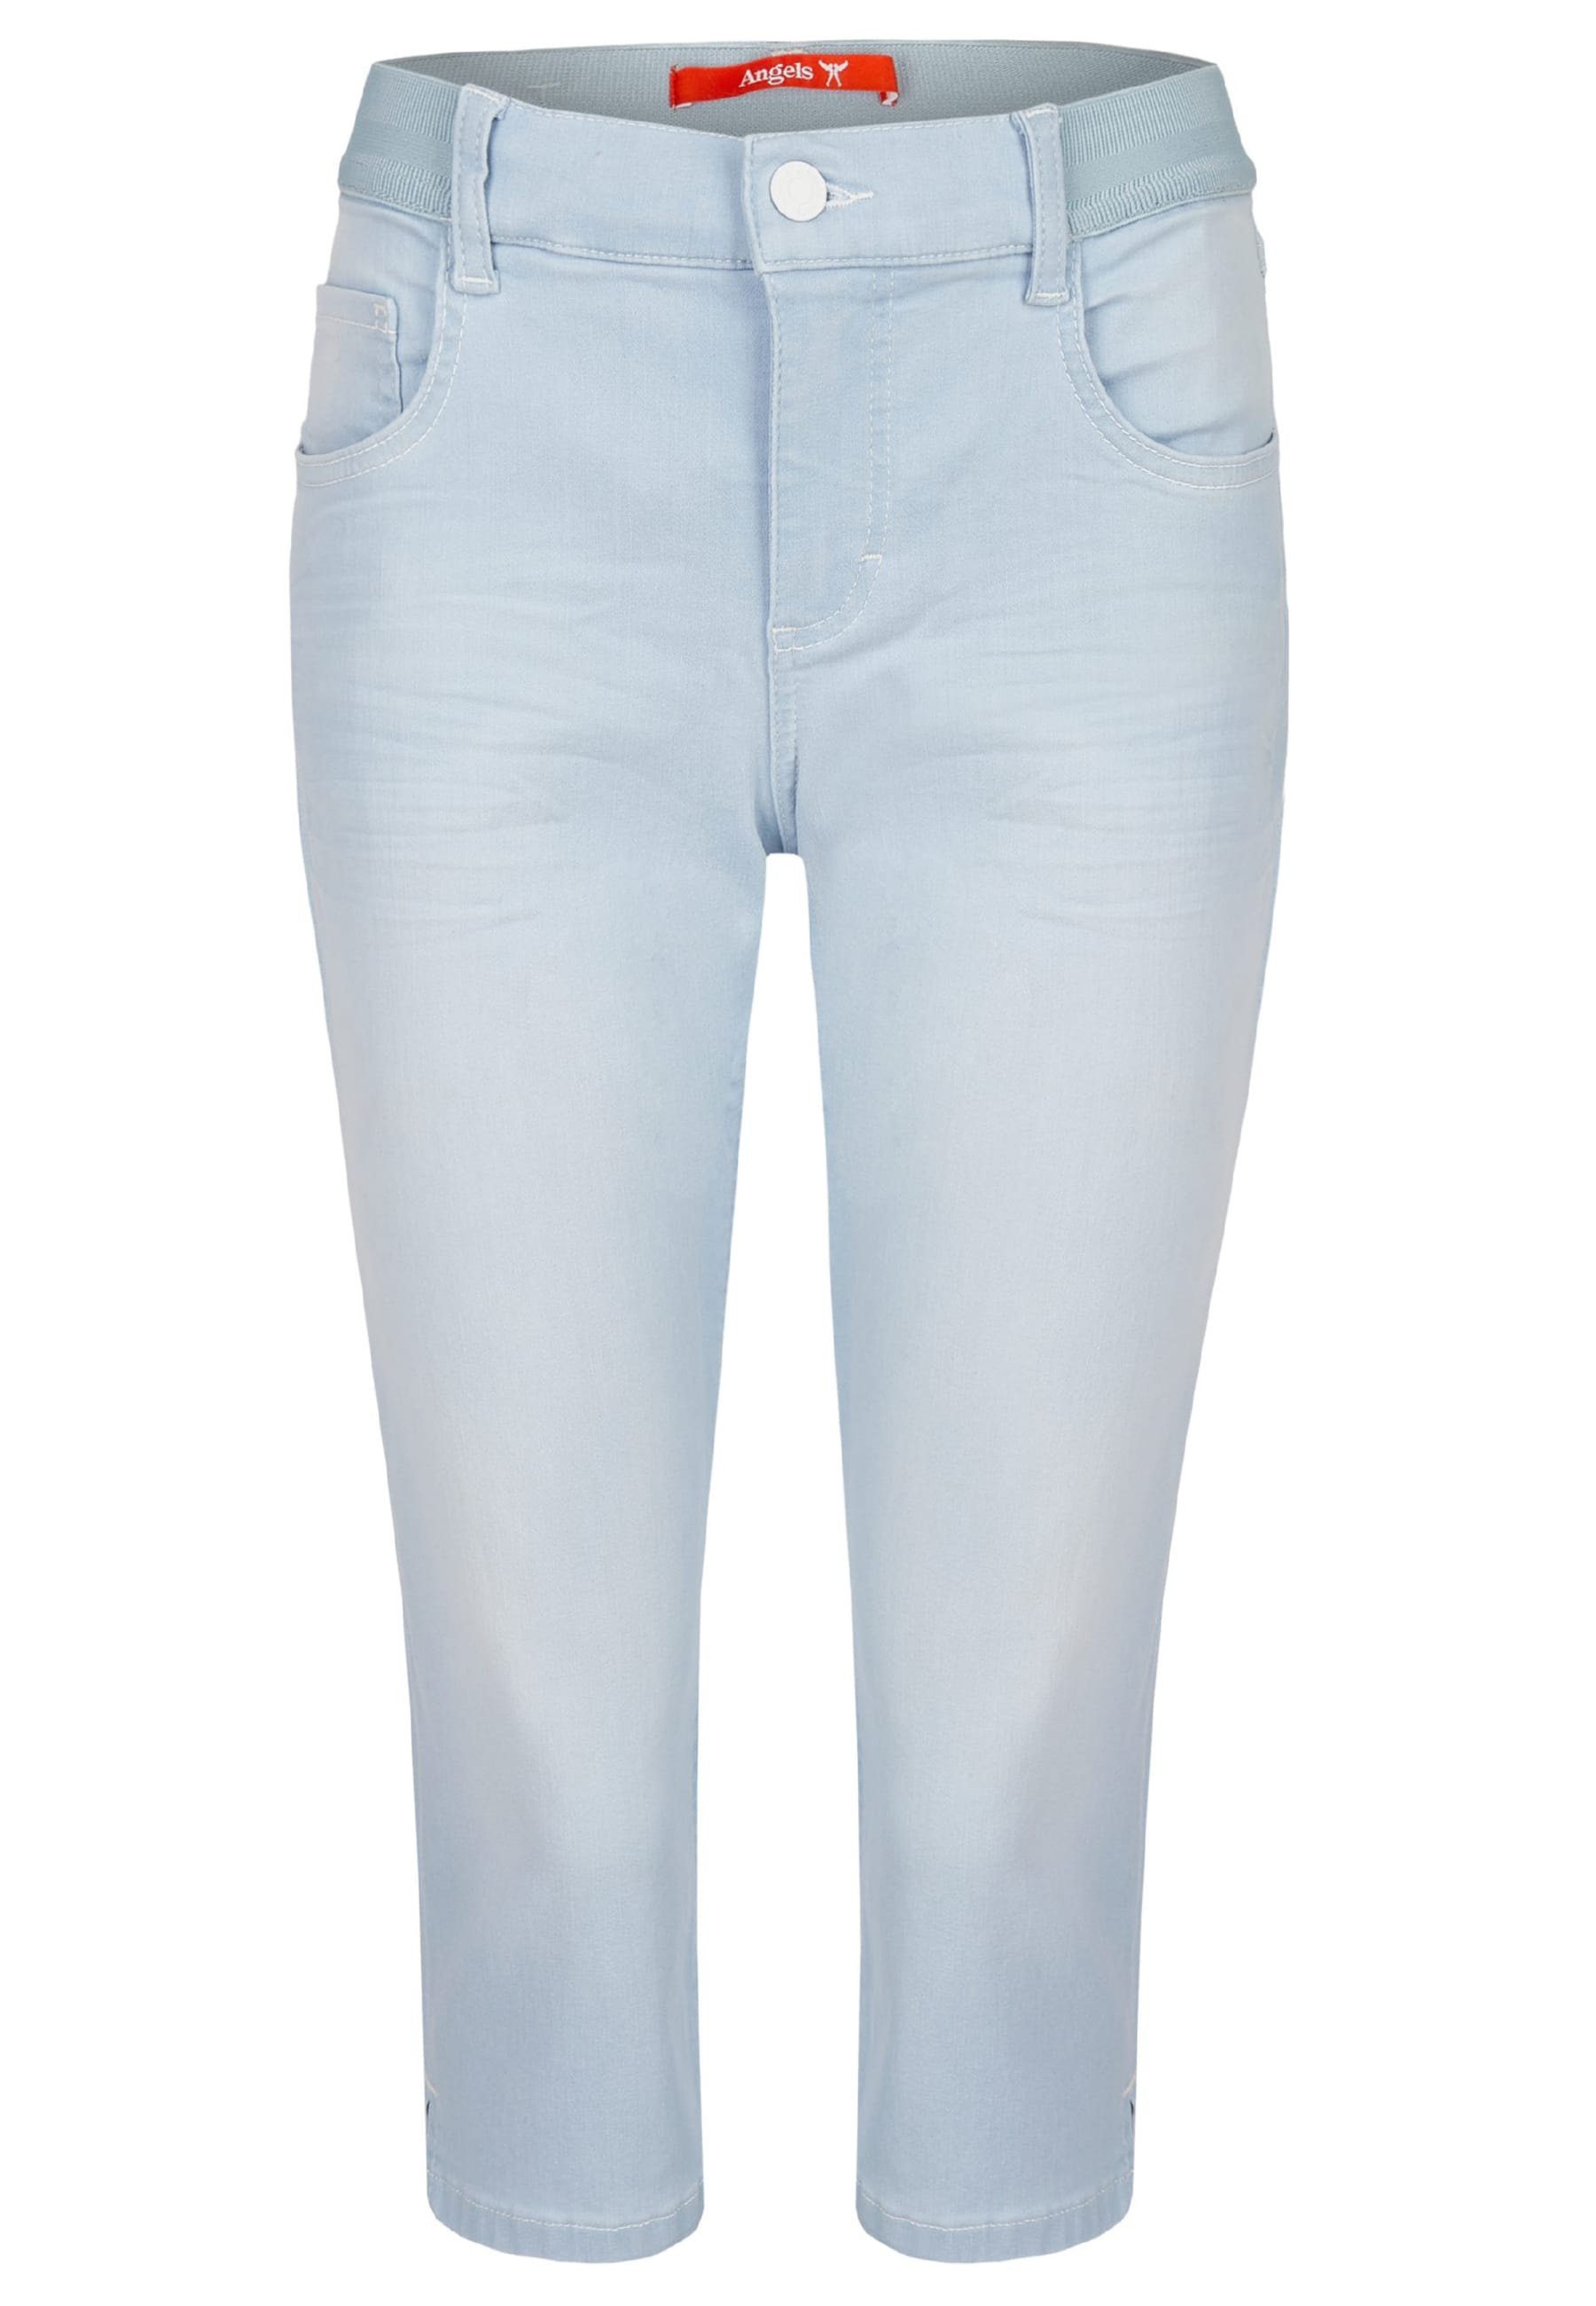 klassischem Onesize mit Capri hellblau Jeans Design Dehnbund-Jeans ANGELS Kurze